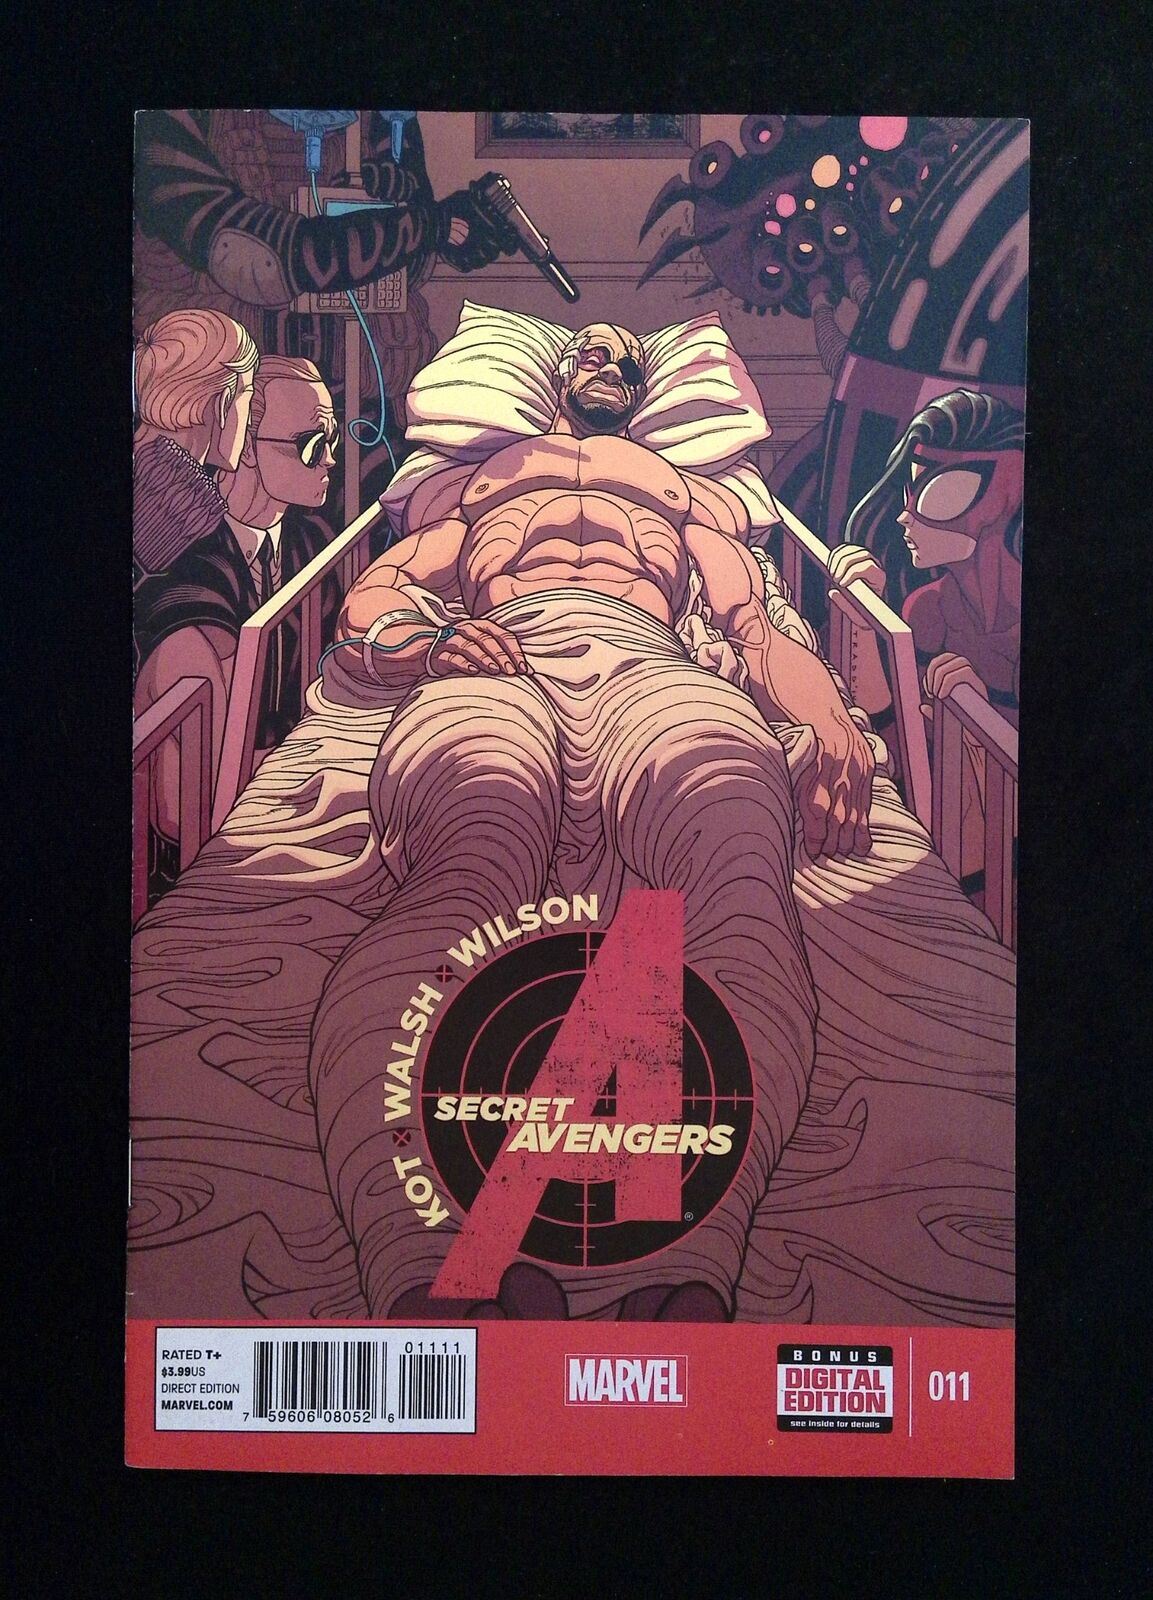 Secret Avengers #11 (3RD SERIES) MARVEL Comics 2015 VF+